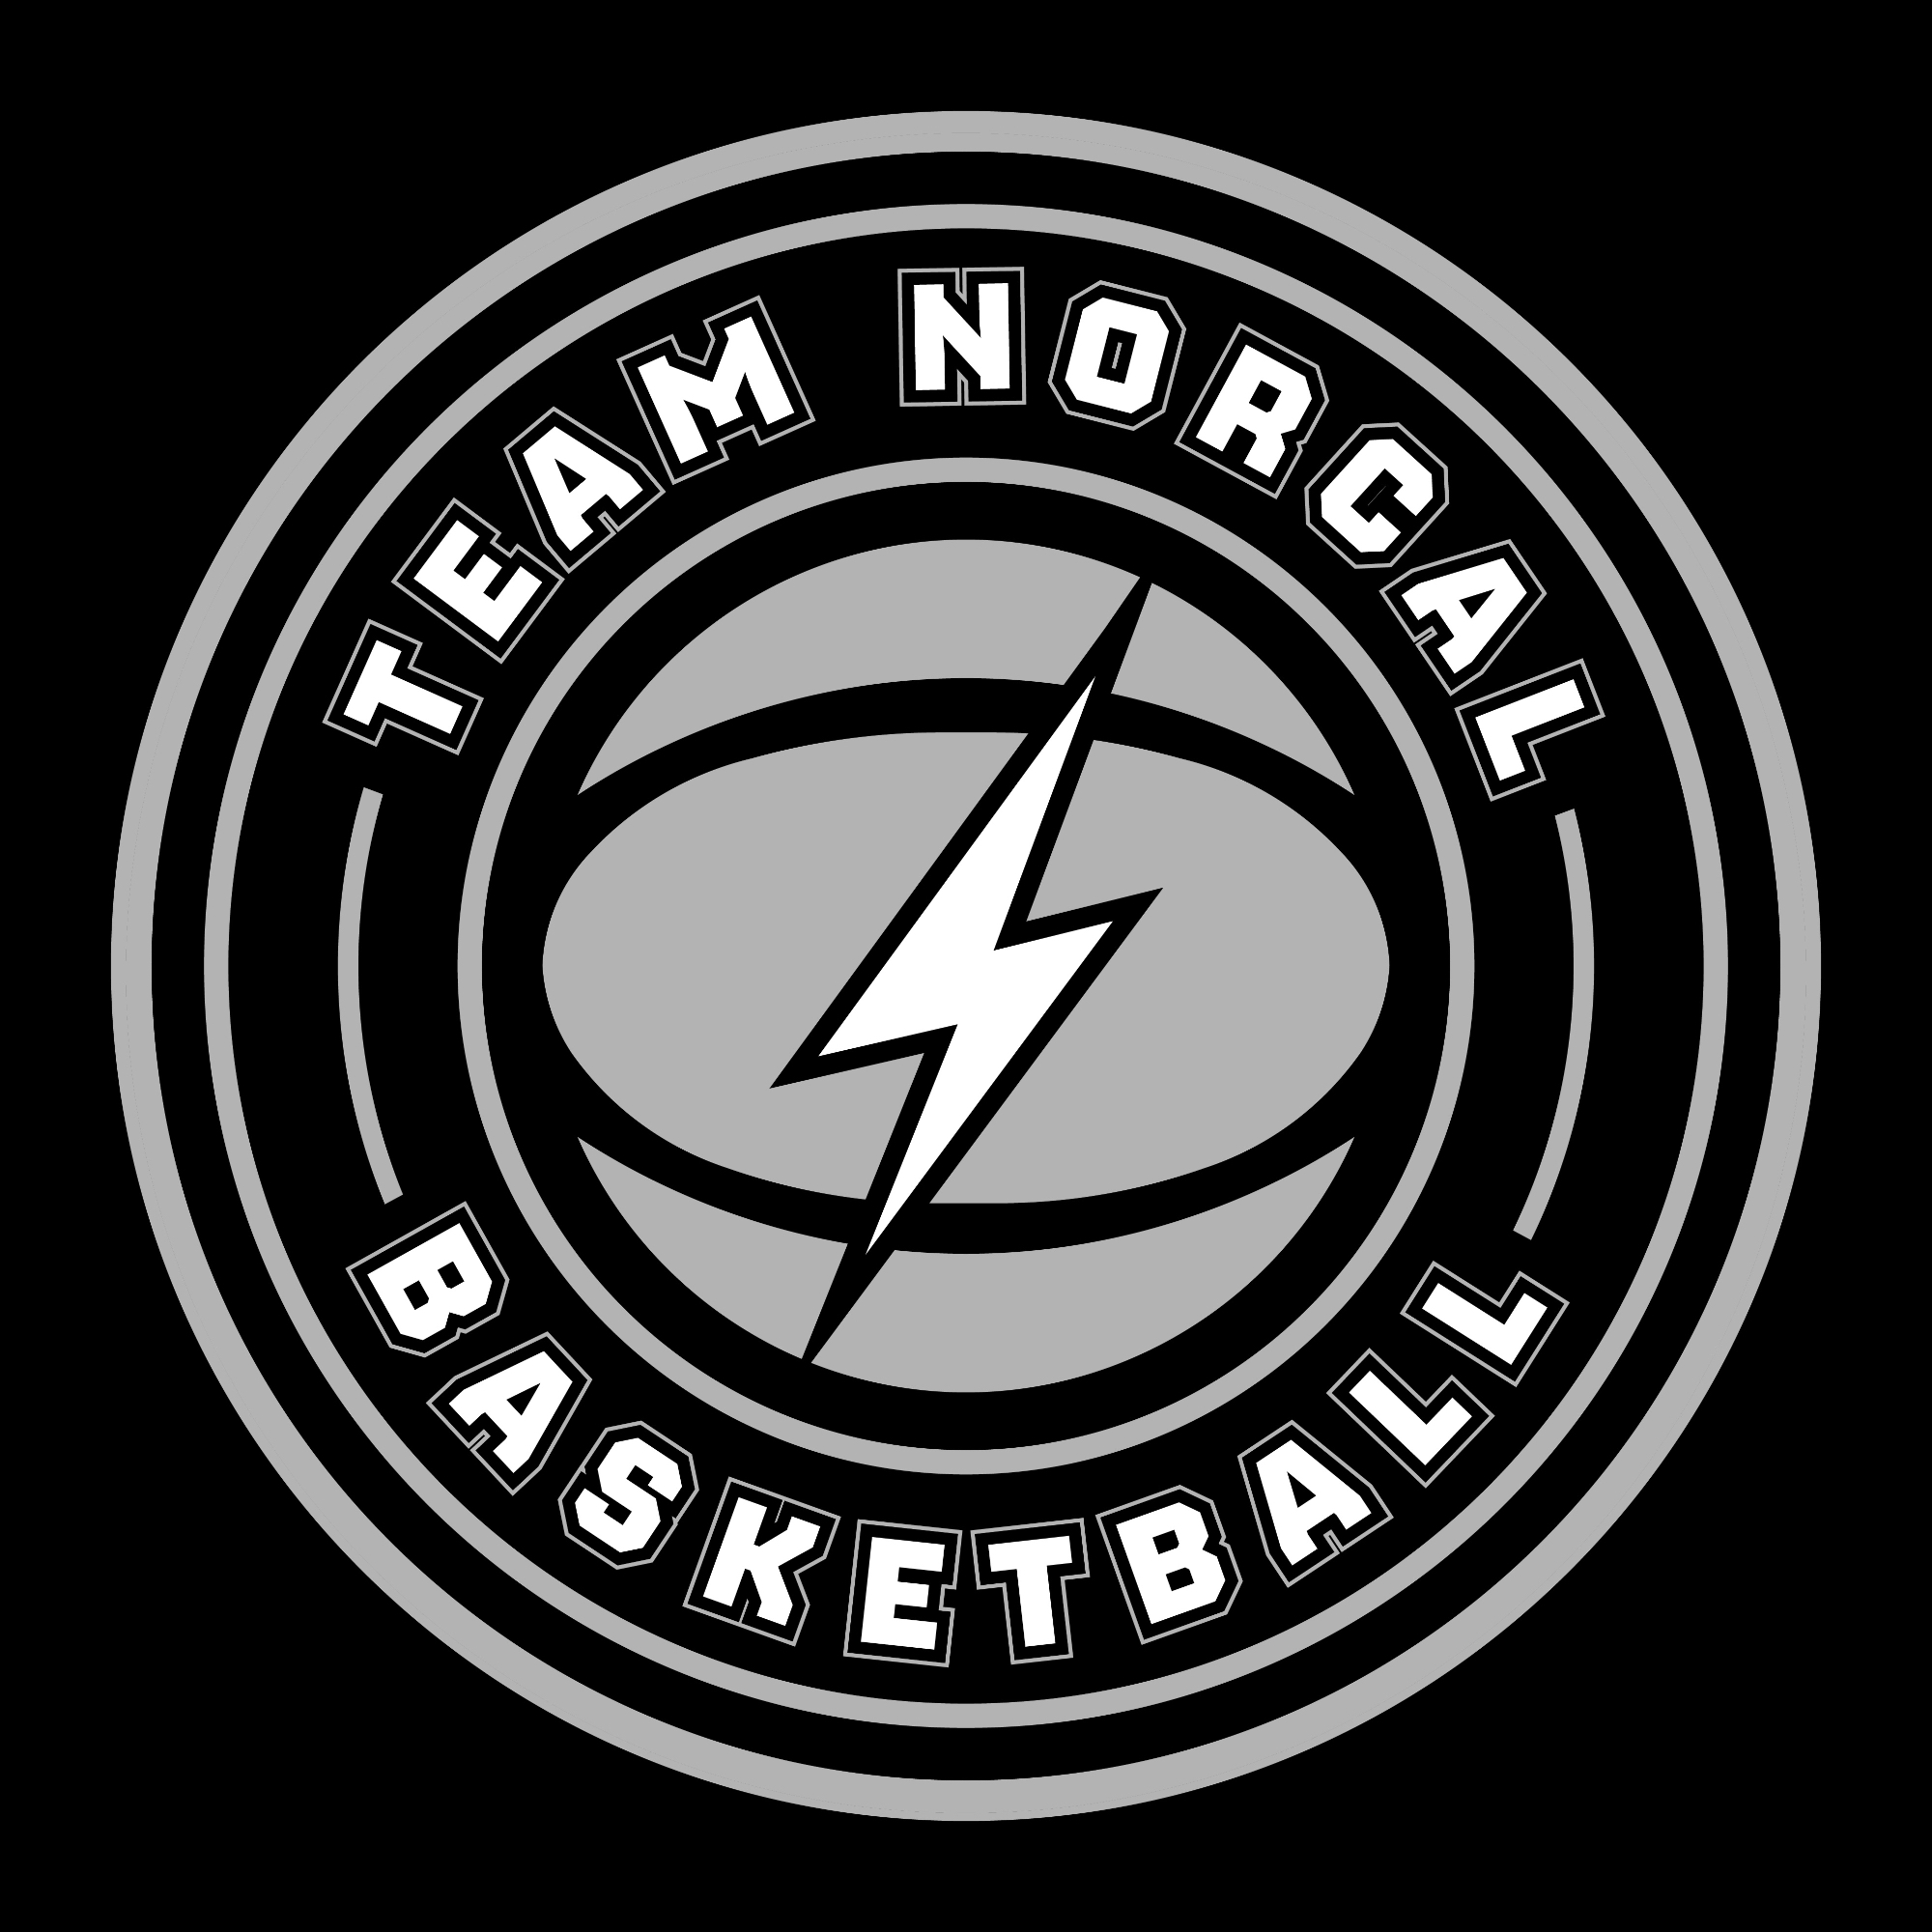 Organization logo for Team Nor-Cal Basketball